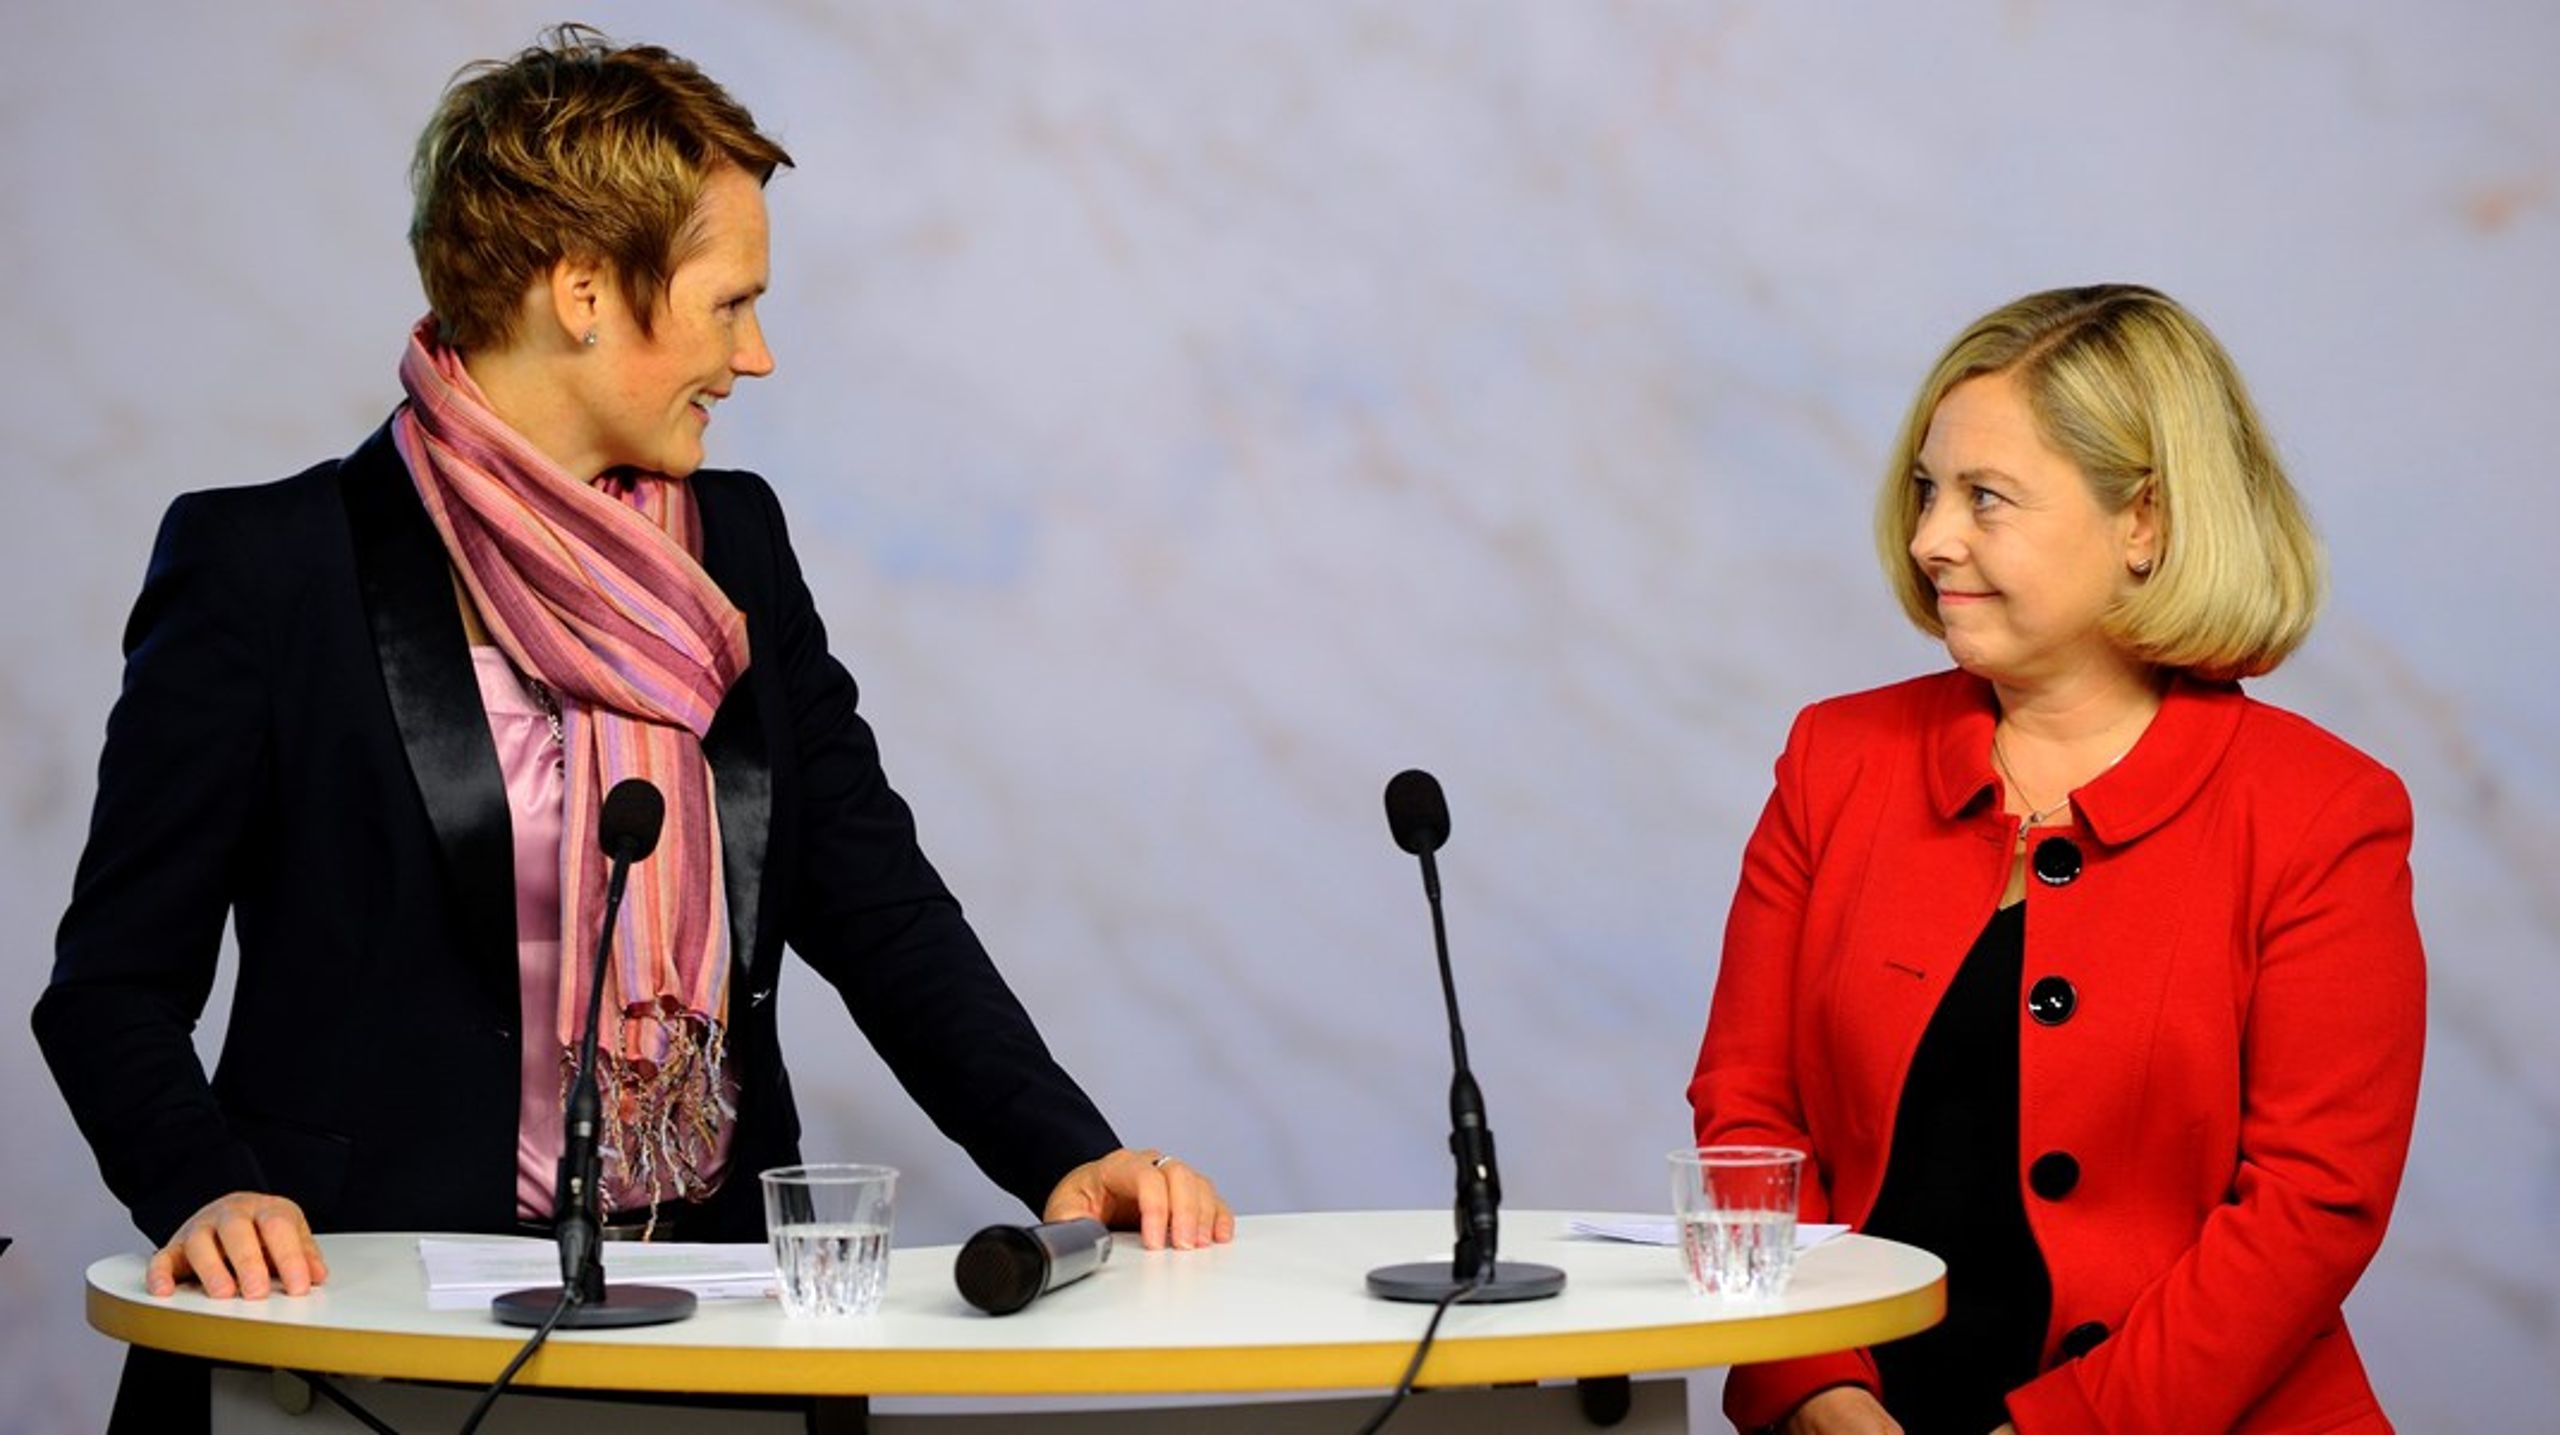 År 2012 presenterade dåvarande energiministern&nbsp;Anna-Karin Hatt (C)&nbsp;Anne Vadasz-Nilsson som ny generaldirektör för Energimarknadsinspektionen. Nu blir Vadasz-Nilsson generaldirektör för Kammarkollegiet.<br>